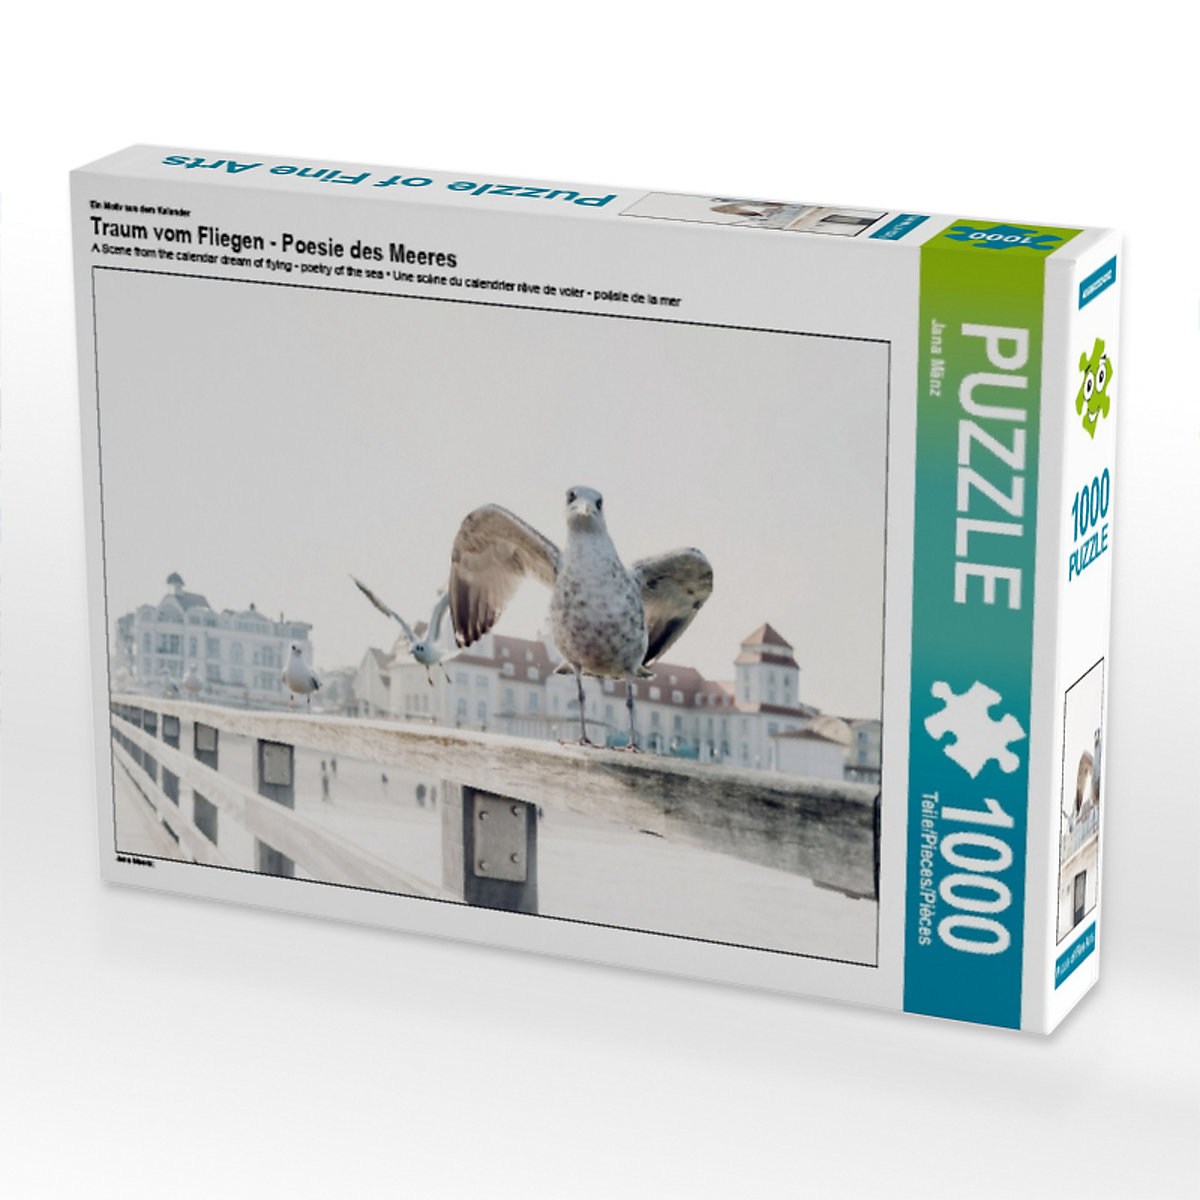 CALVENDO® Puzzle CALVENDO Puzzle Traum vom Fliegen Poesie des Meeres 1000 Teile Foto-Puzzle für glückliche Stunden